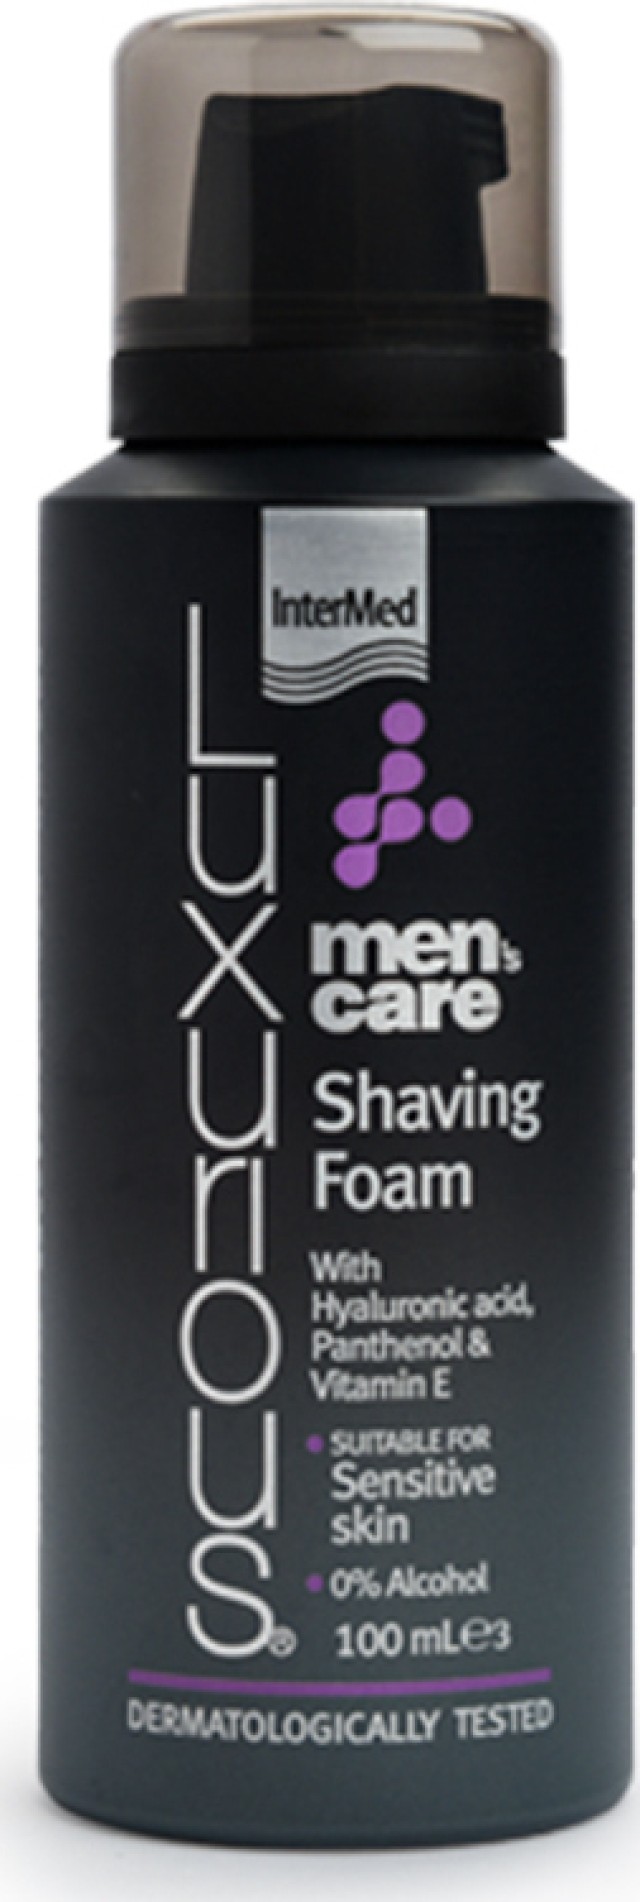 Intermed Luxurious Mens Care Shaving Foam, Πλούσιος Αφρός για Απαλό Ξύρισμα Χωρίς Ερεθισμούς 100ml